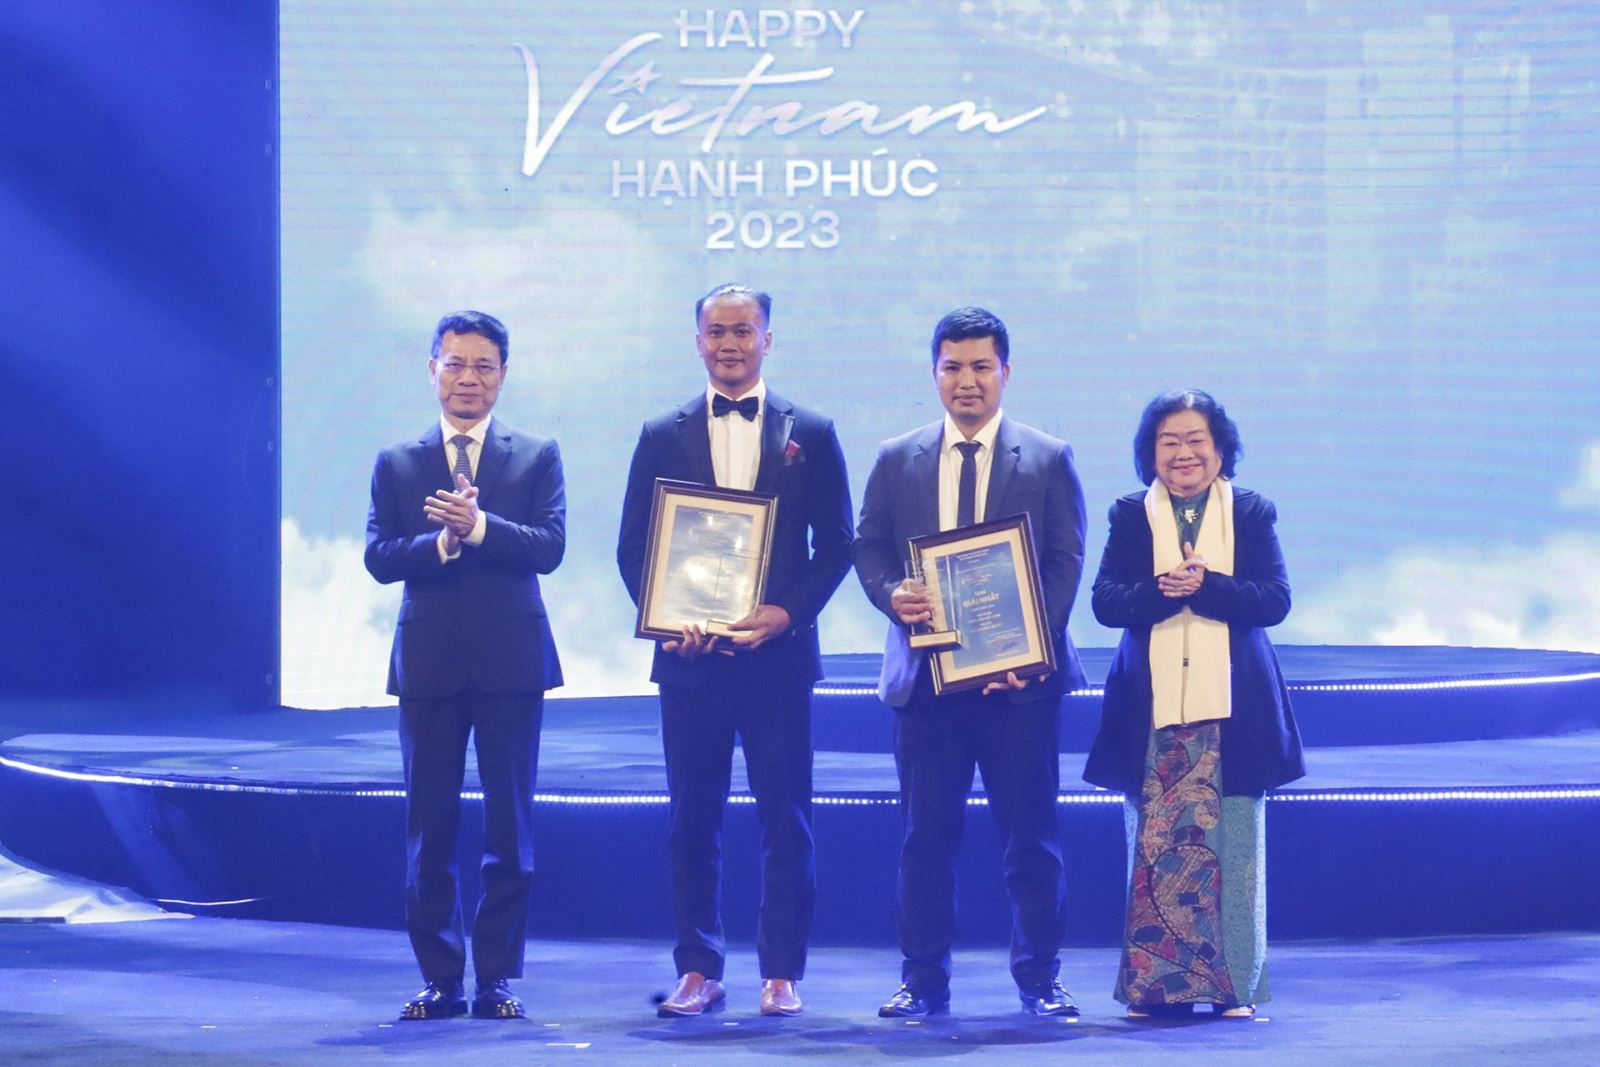 “Việt Nam hạnh phúc - Happy Vietnam” 2023: ngày hội của những người Việt Nam cùng cất tiếng nói về cuộc sống hạnh phúc 